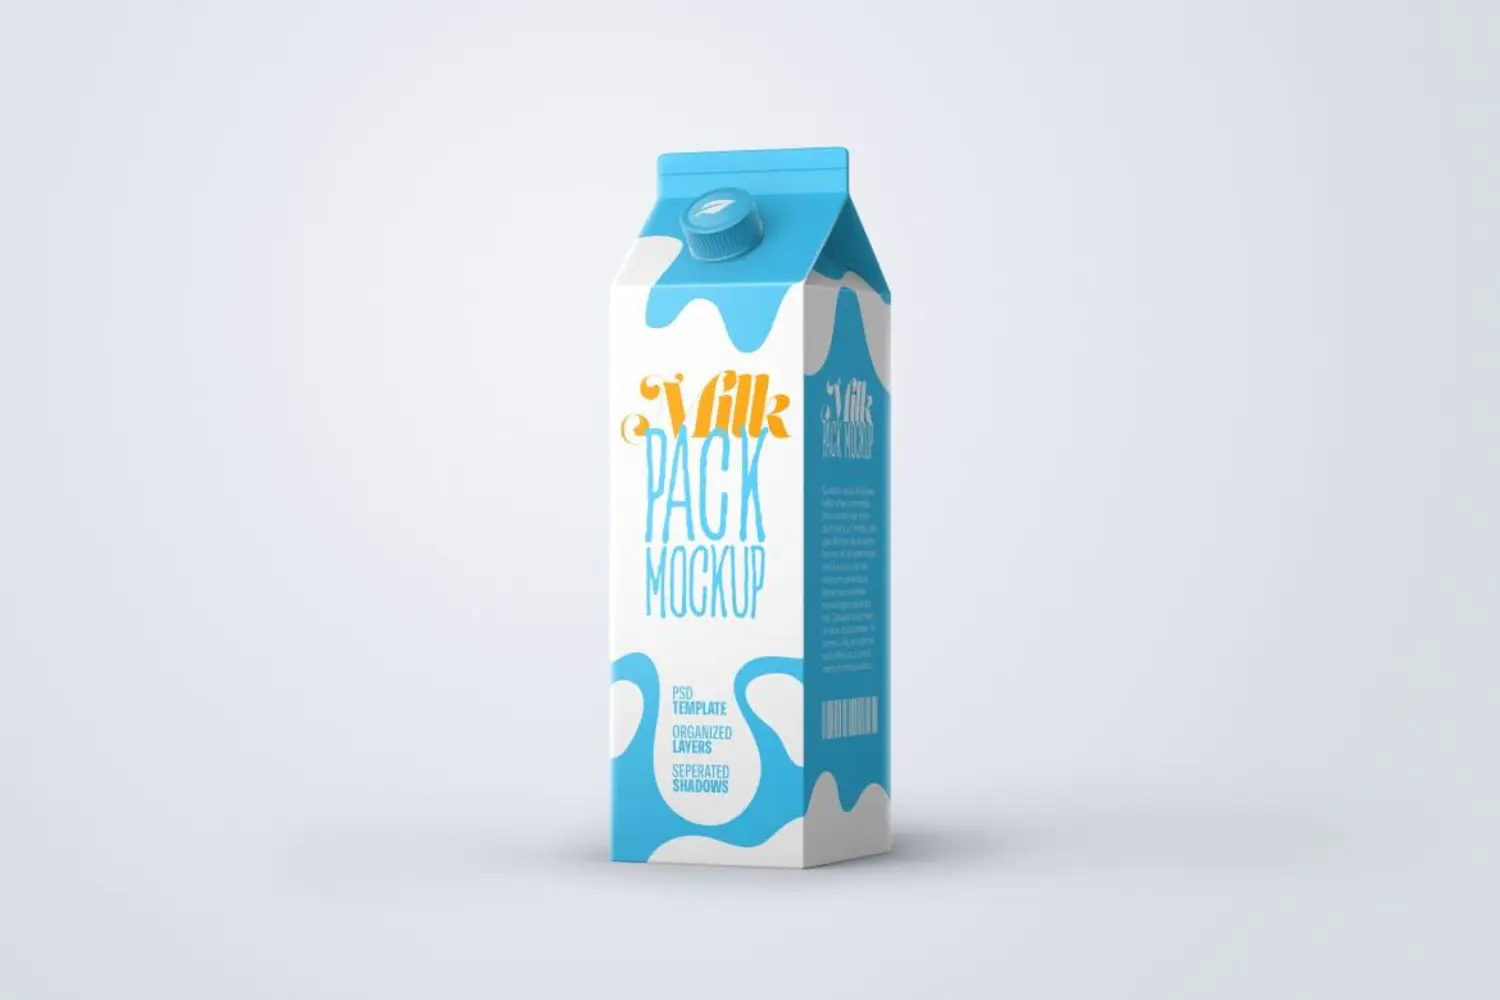 93 扭盖牛奶饮品苹果醋纸盒包装设计样机集v2 Milk Carton Box Mockup Set  Packaging Design